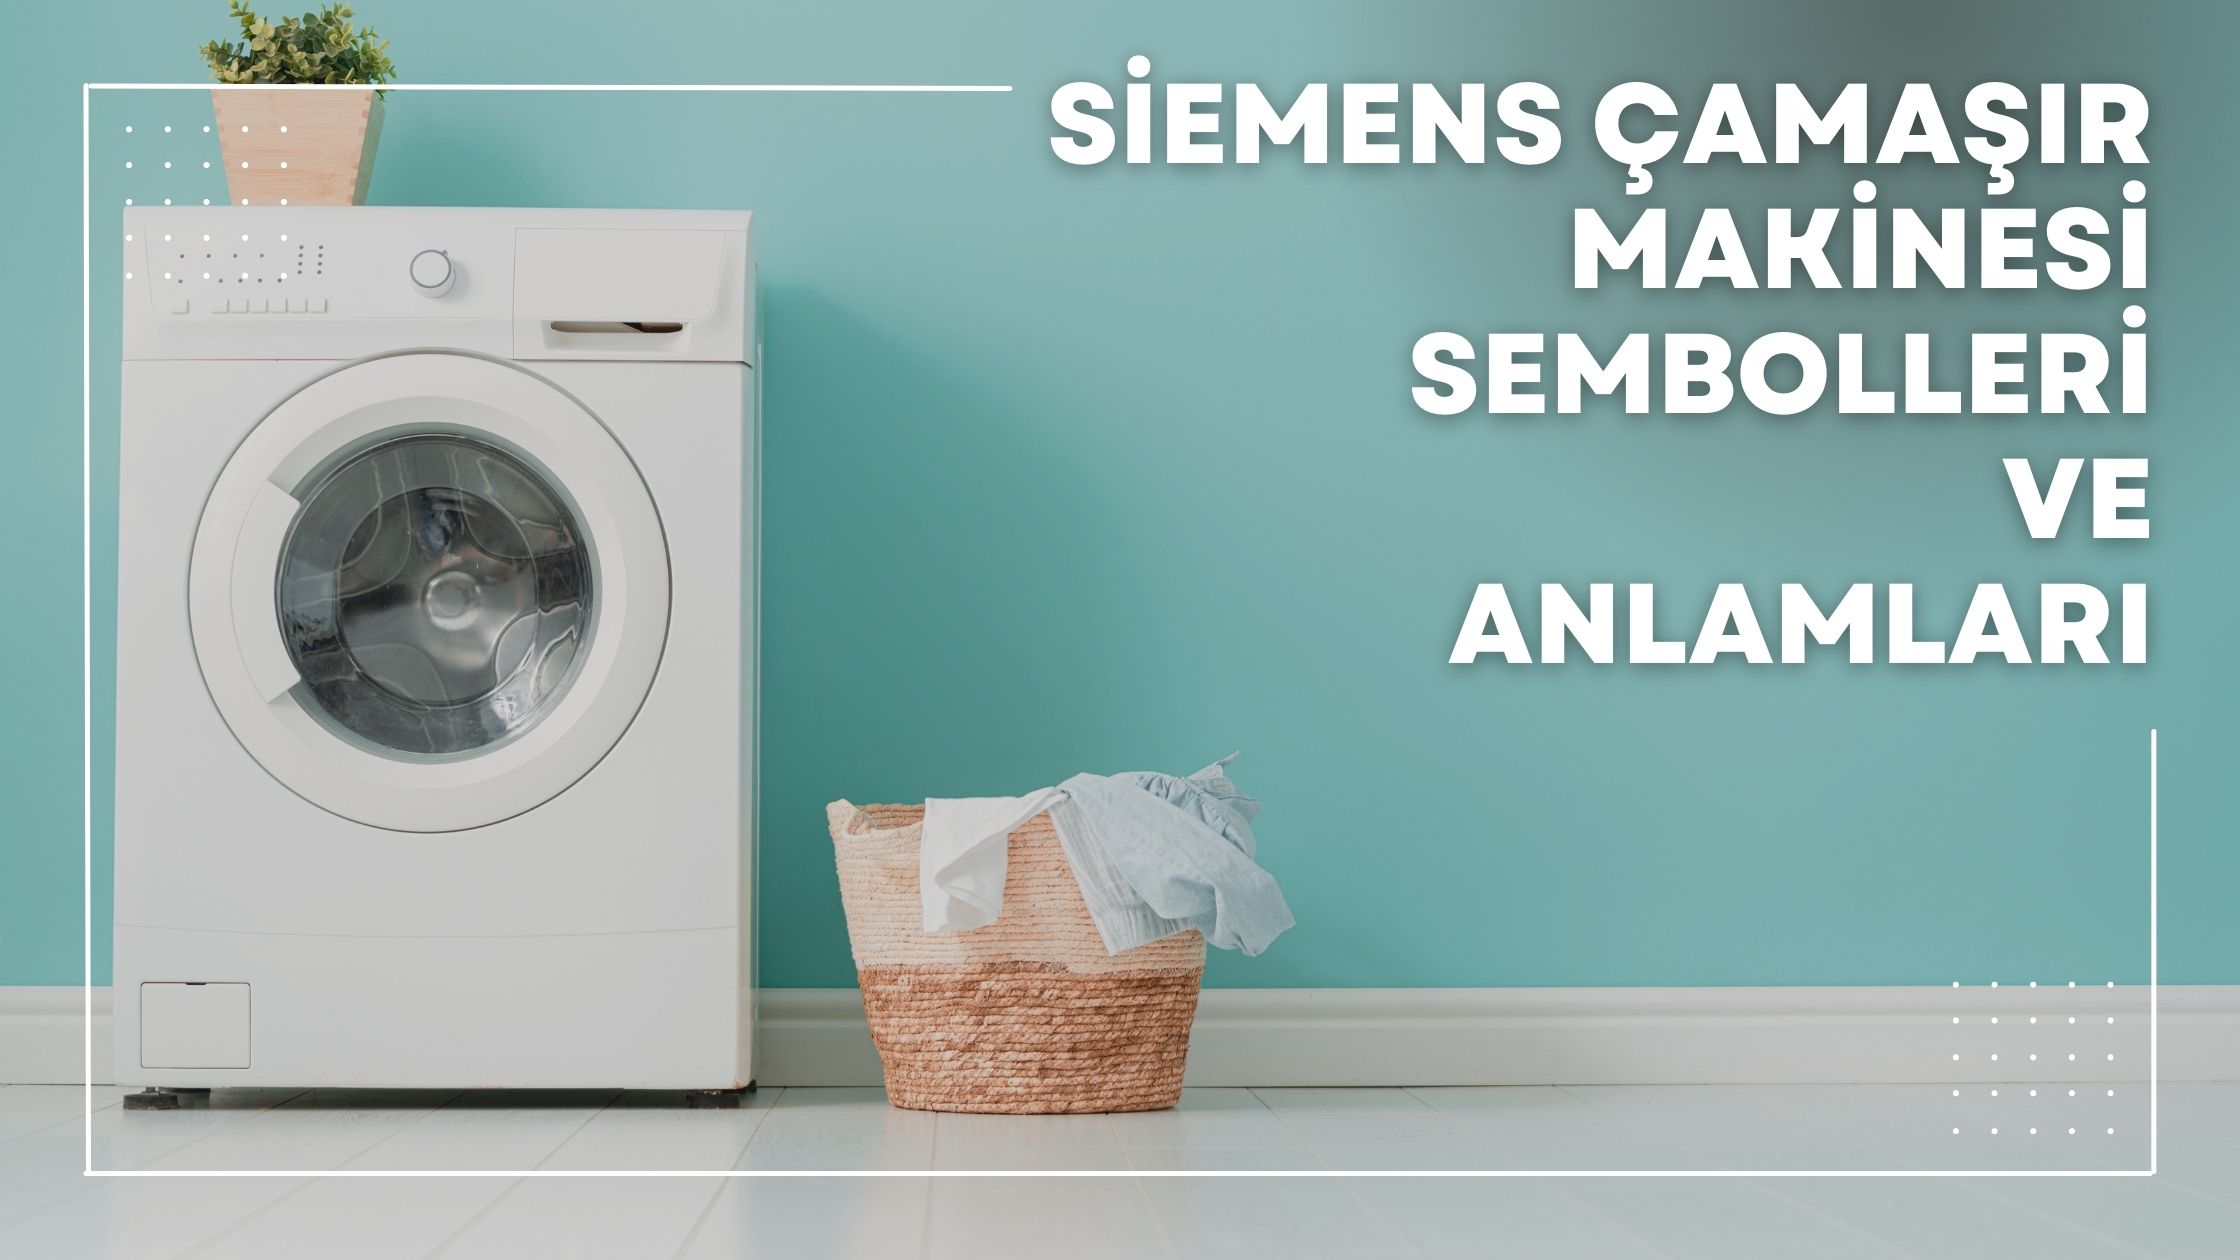 Siemens Çamaşır Makinesi Sembolleri ve Anlamları